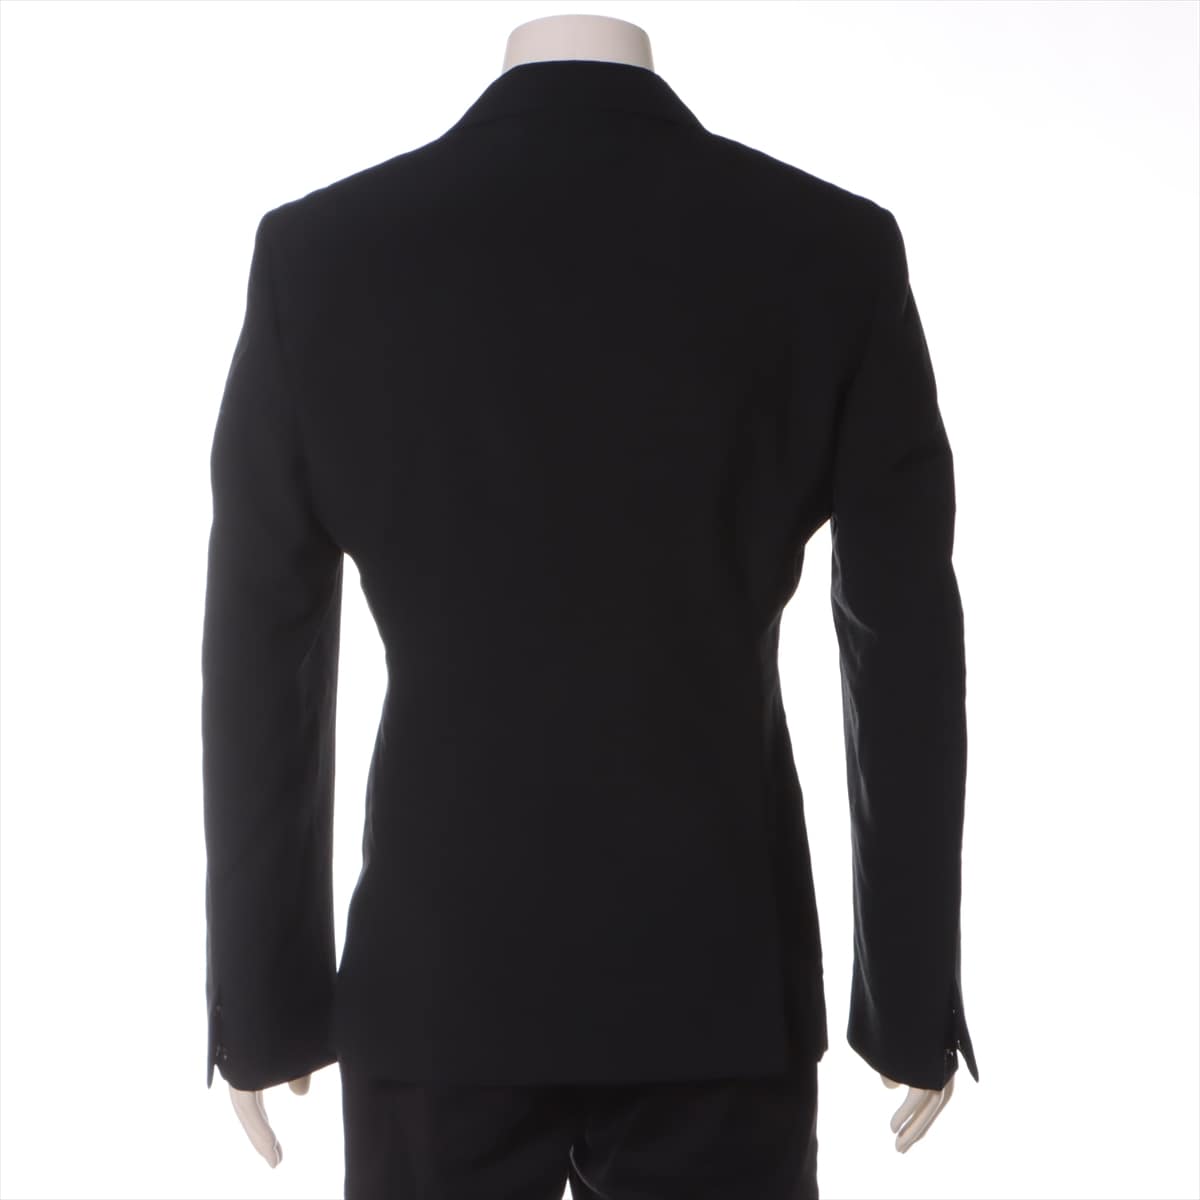 Comme Des Garçons Homme Plus AD2020 Wool Jacket S Men's Black  PG-J053